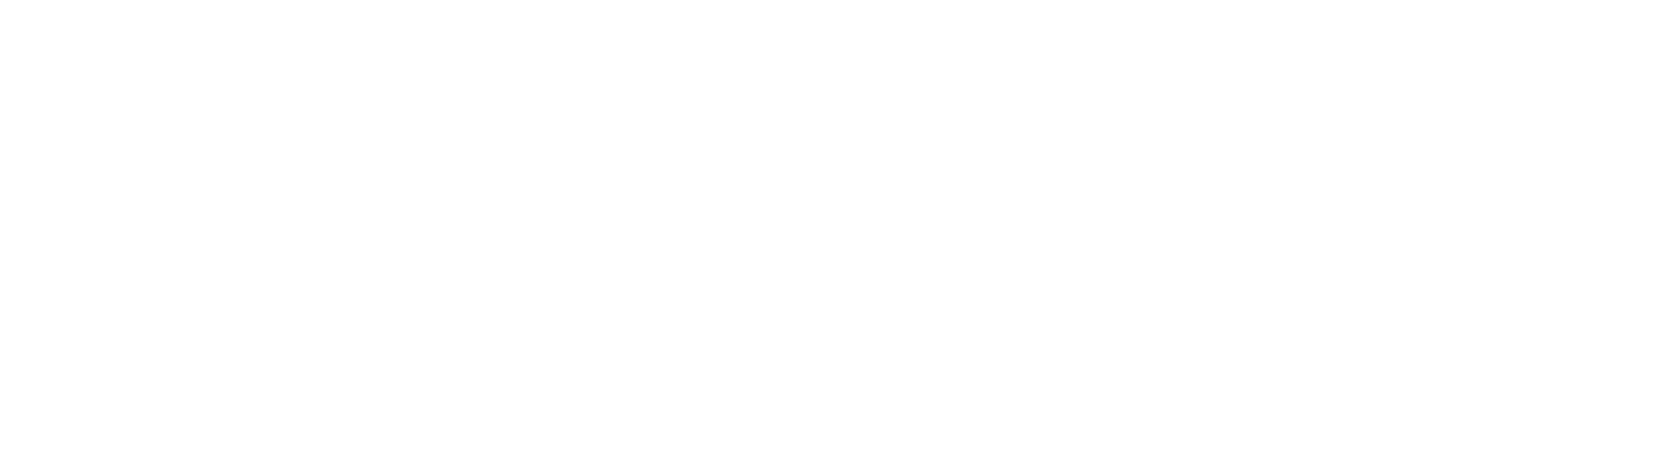 SCGA Public Affairs